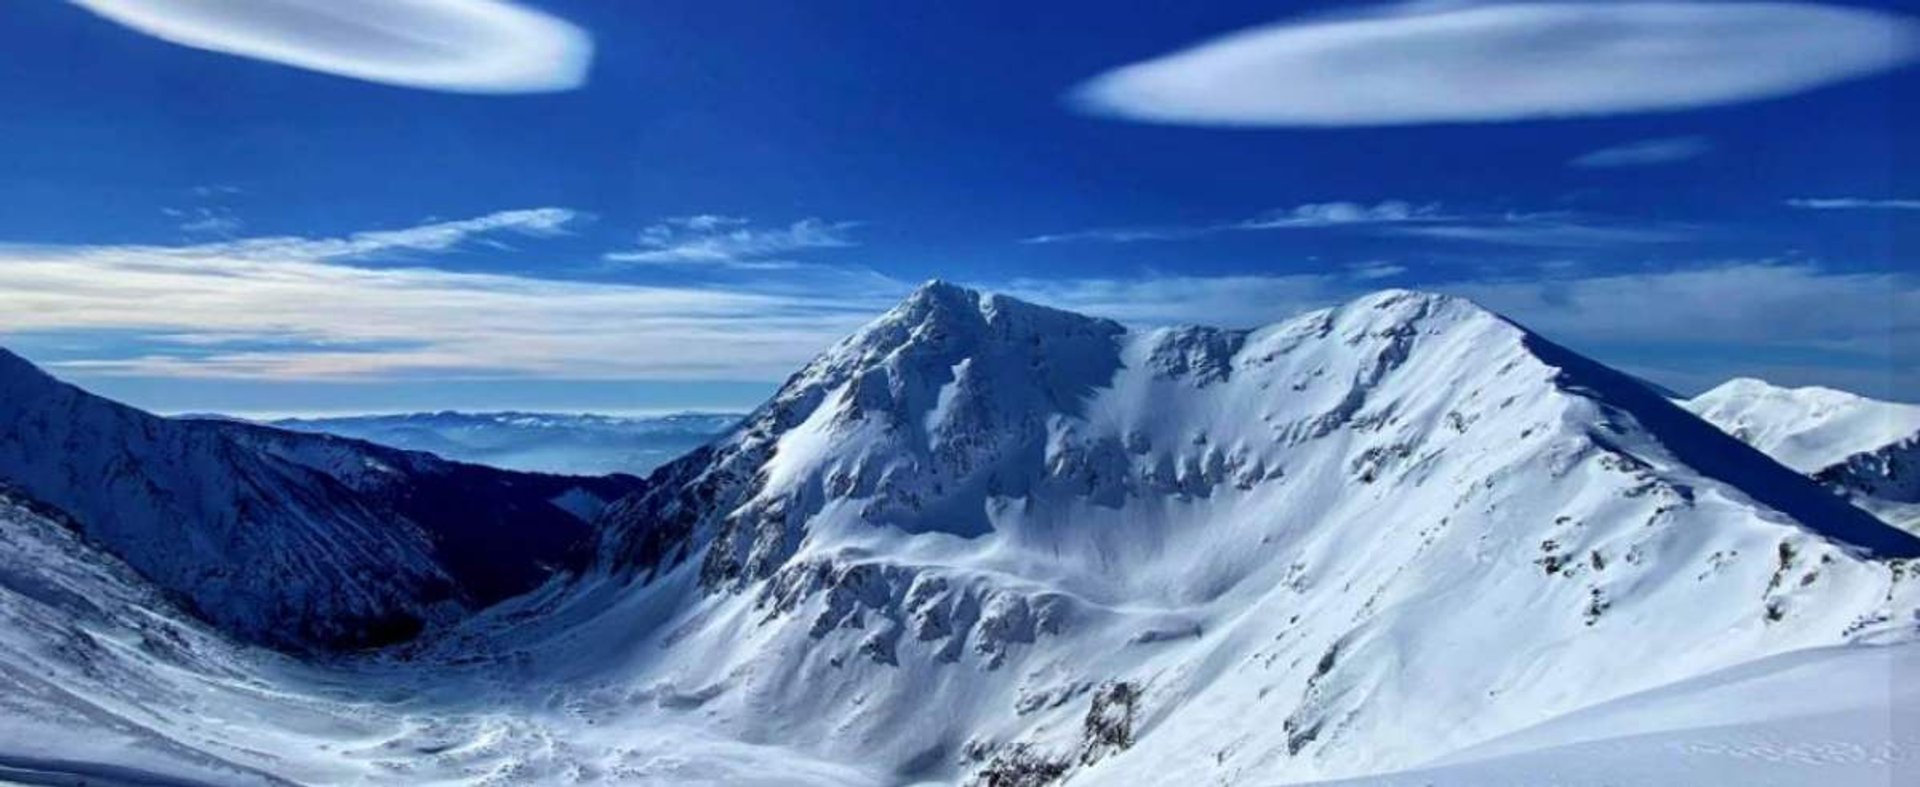 soczewkowe chmury na niebie nad Tatrami